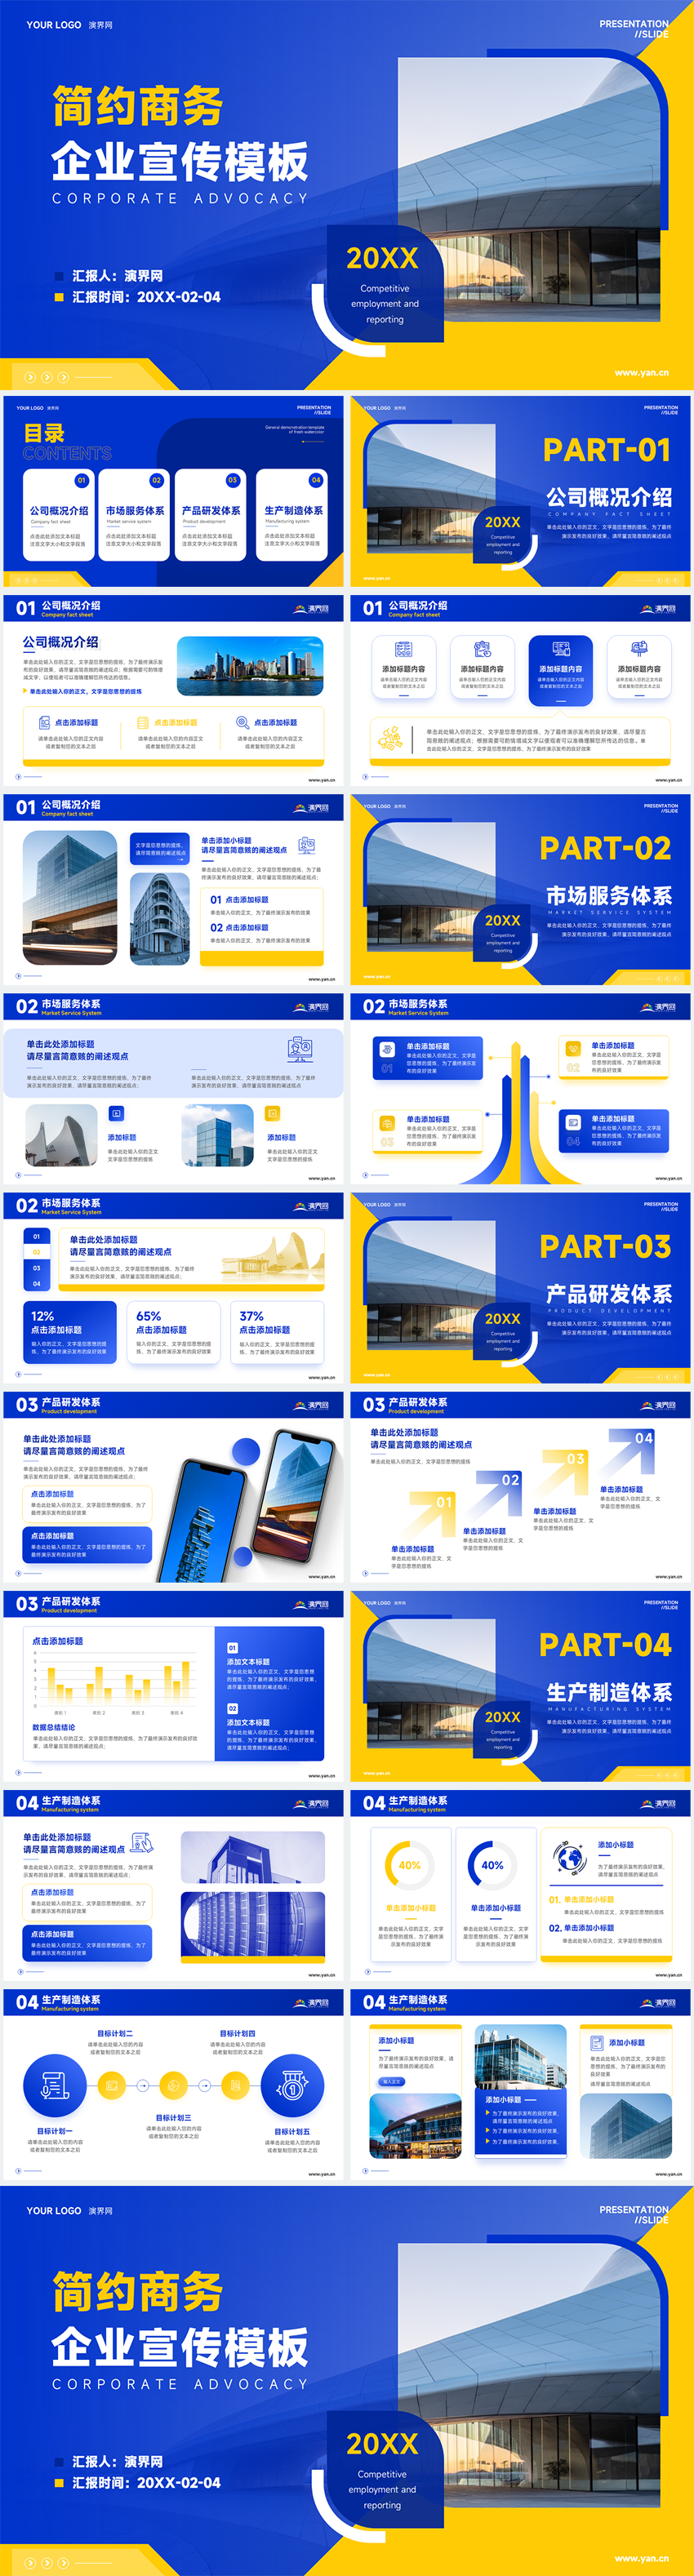 蓝黄色商务风企业宣传介绍公司介绍演示模板